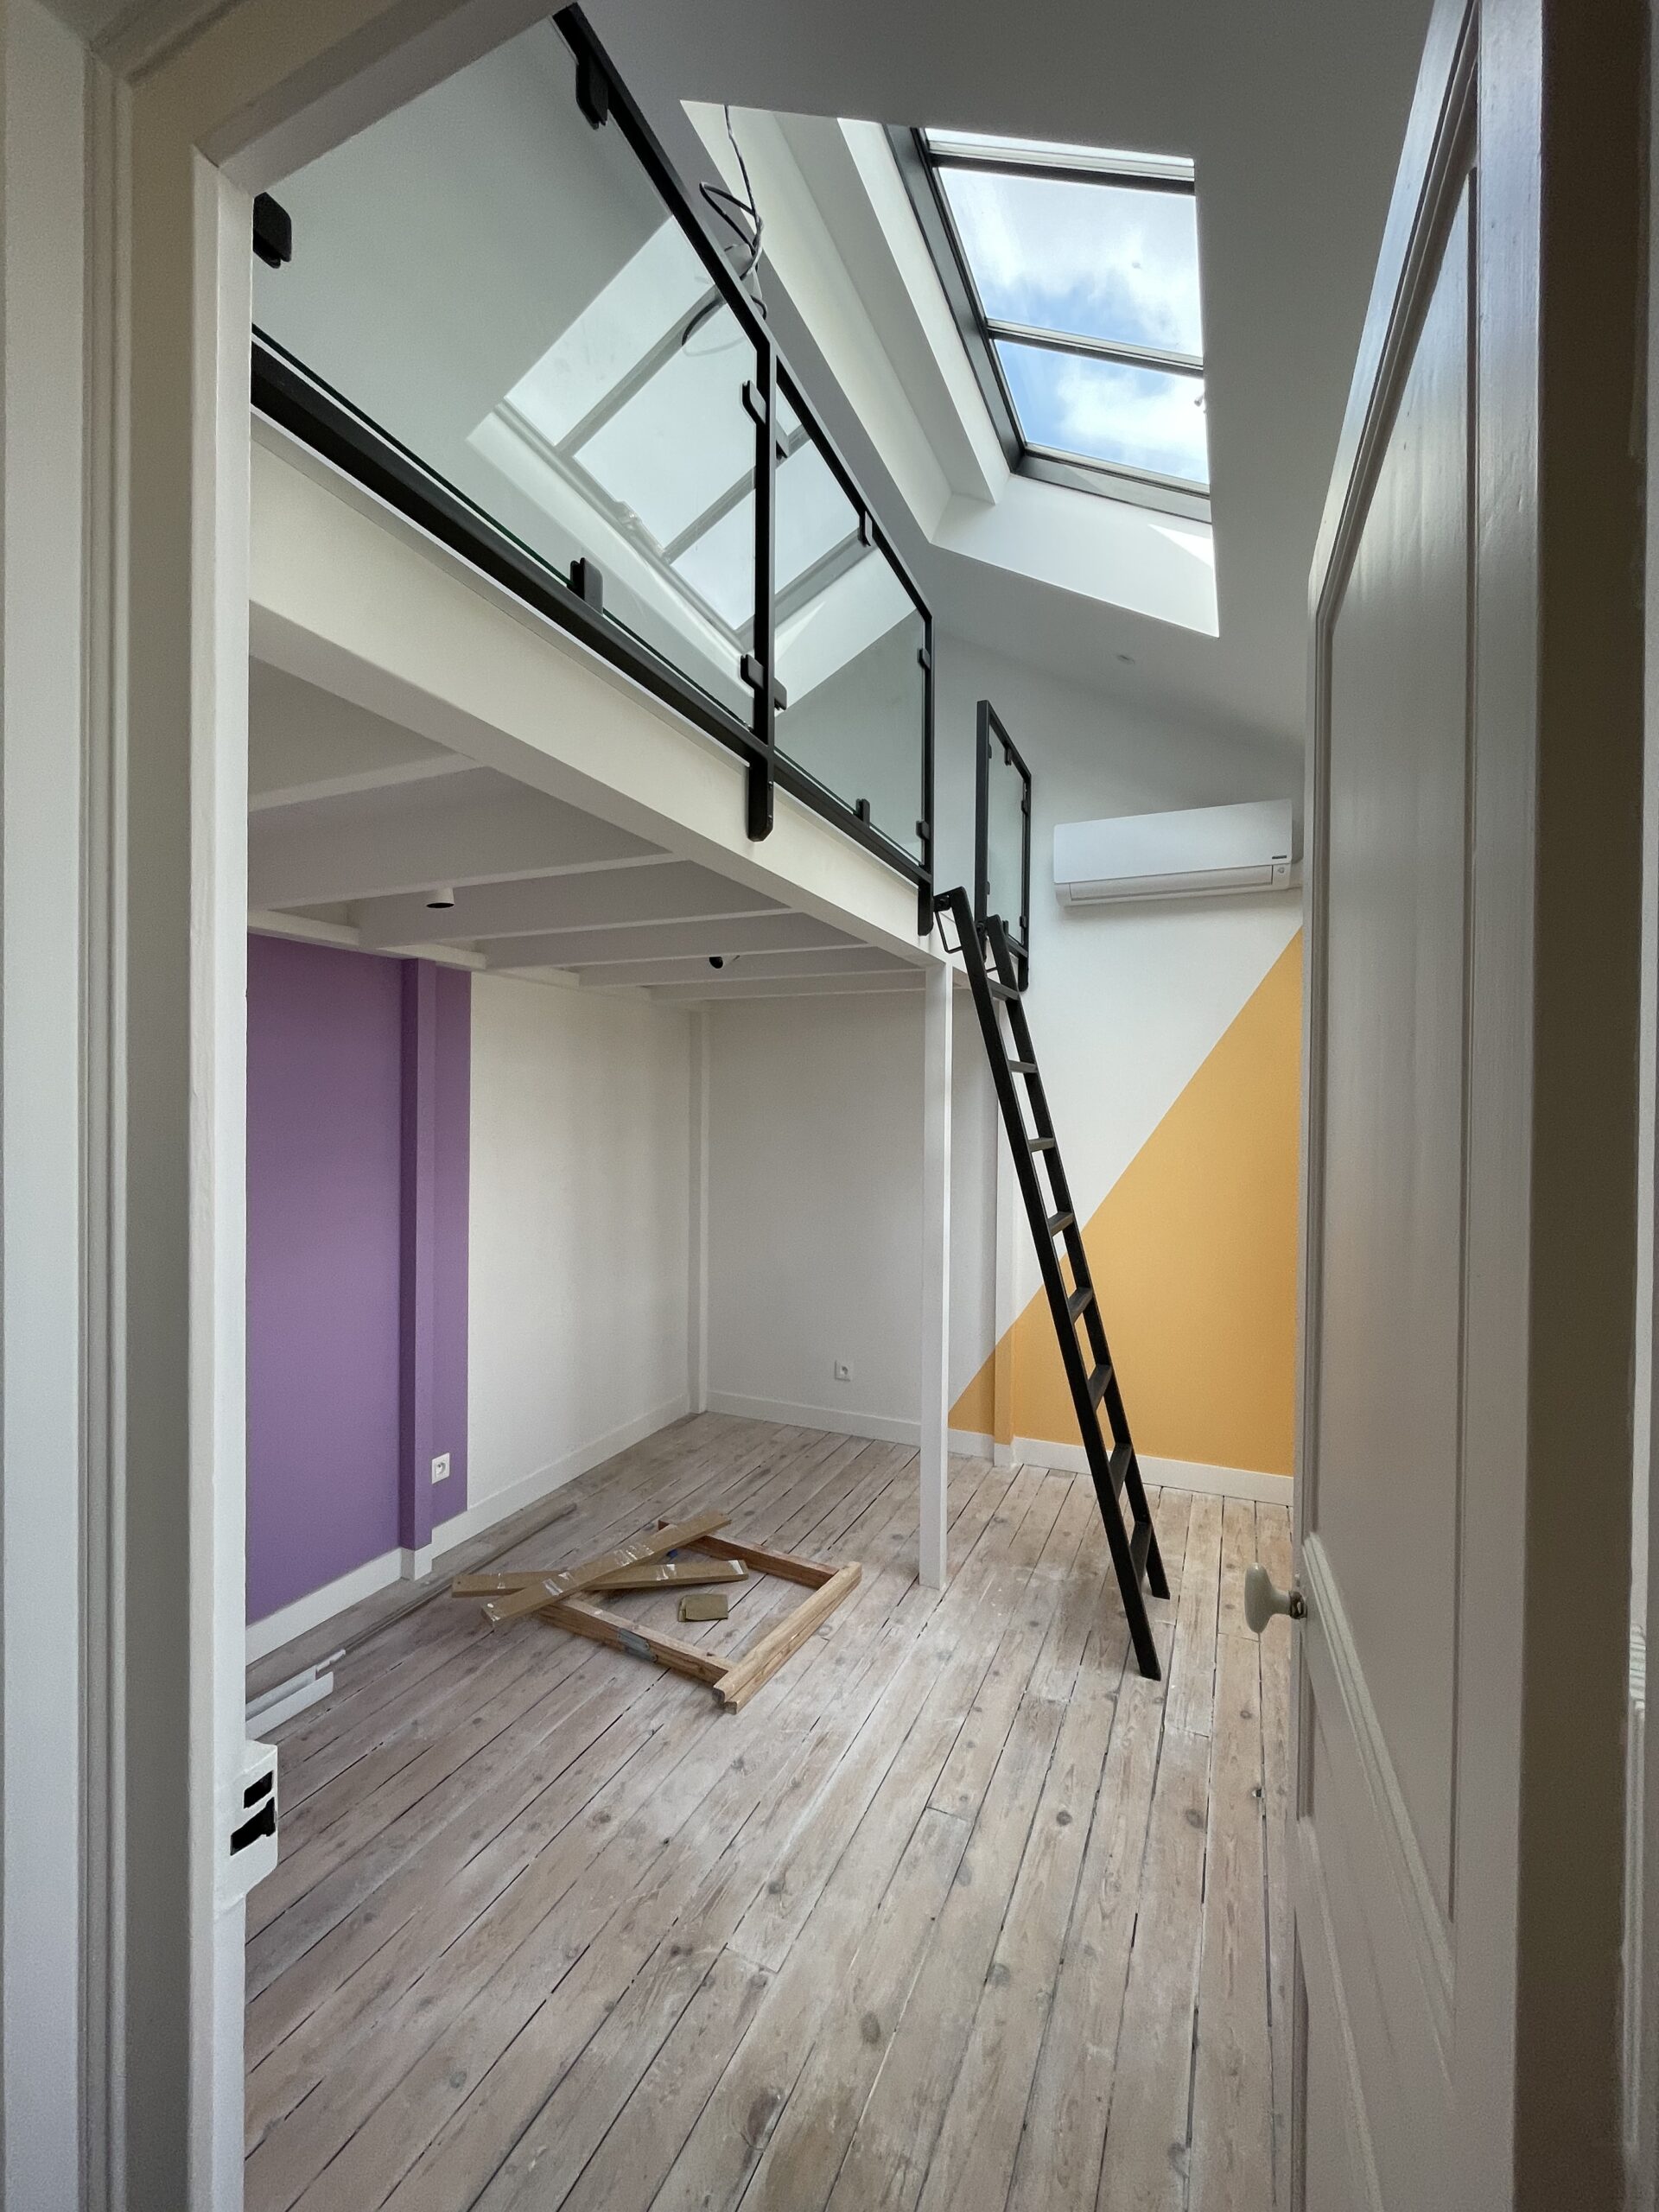 Photo intérieur chambre n°02 entièrement réhabilitée avec création d'une mezzanine et d'une verrière de toit